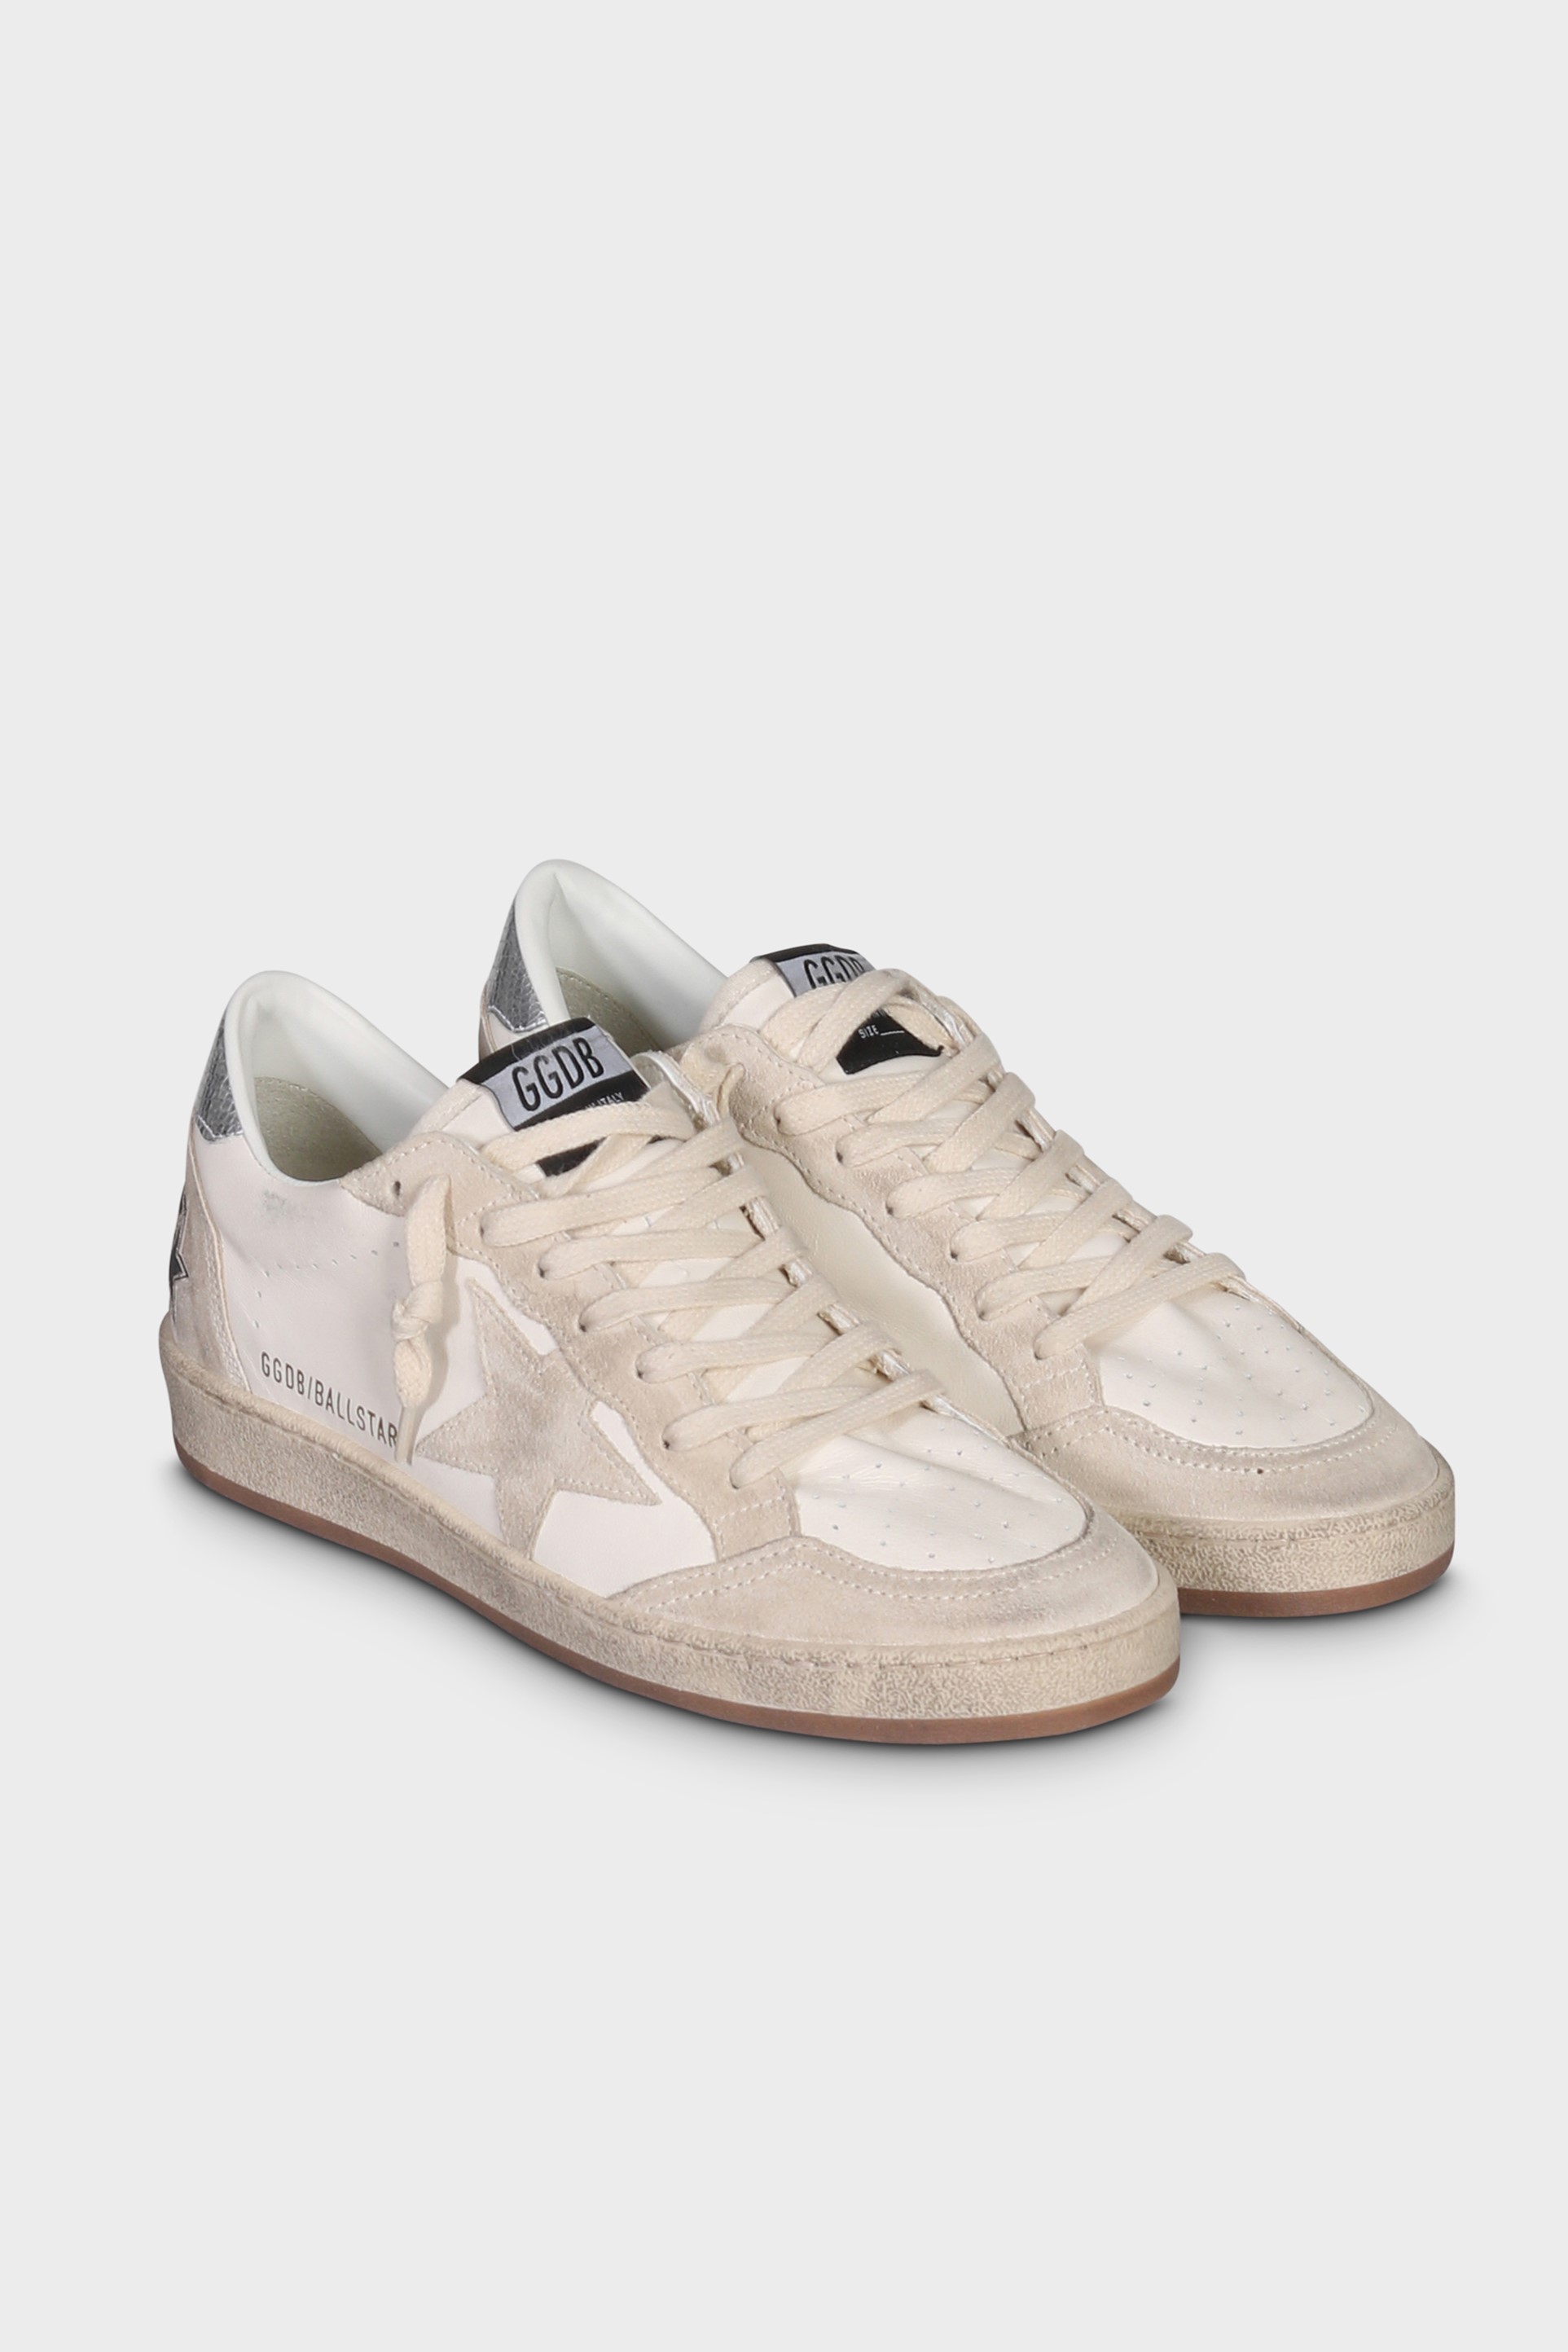 GOLDEN GOOSE Sneaker Ballstar in White/Seedpearl/Silver 42